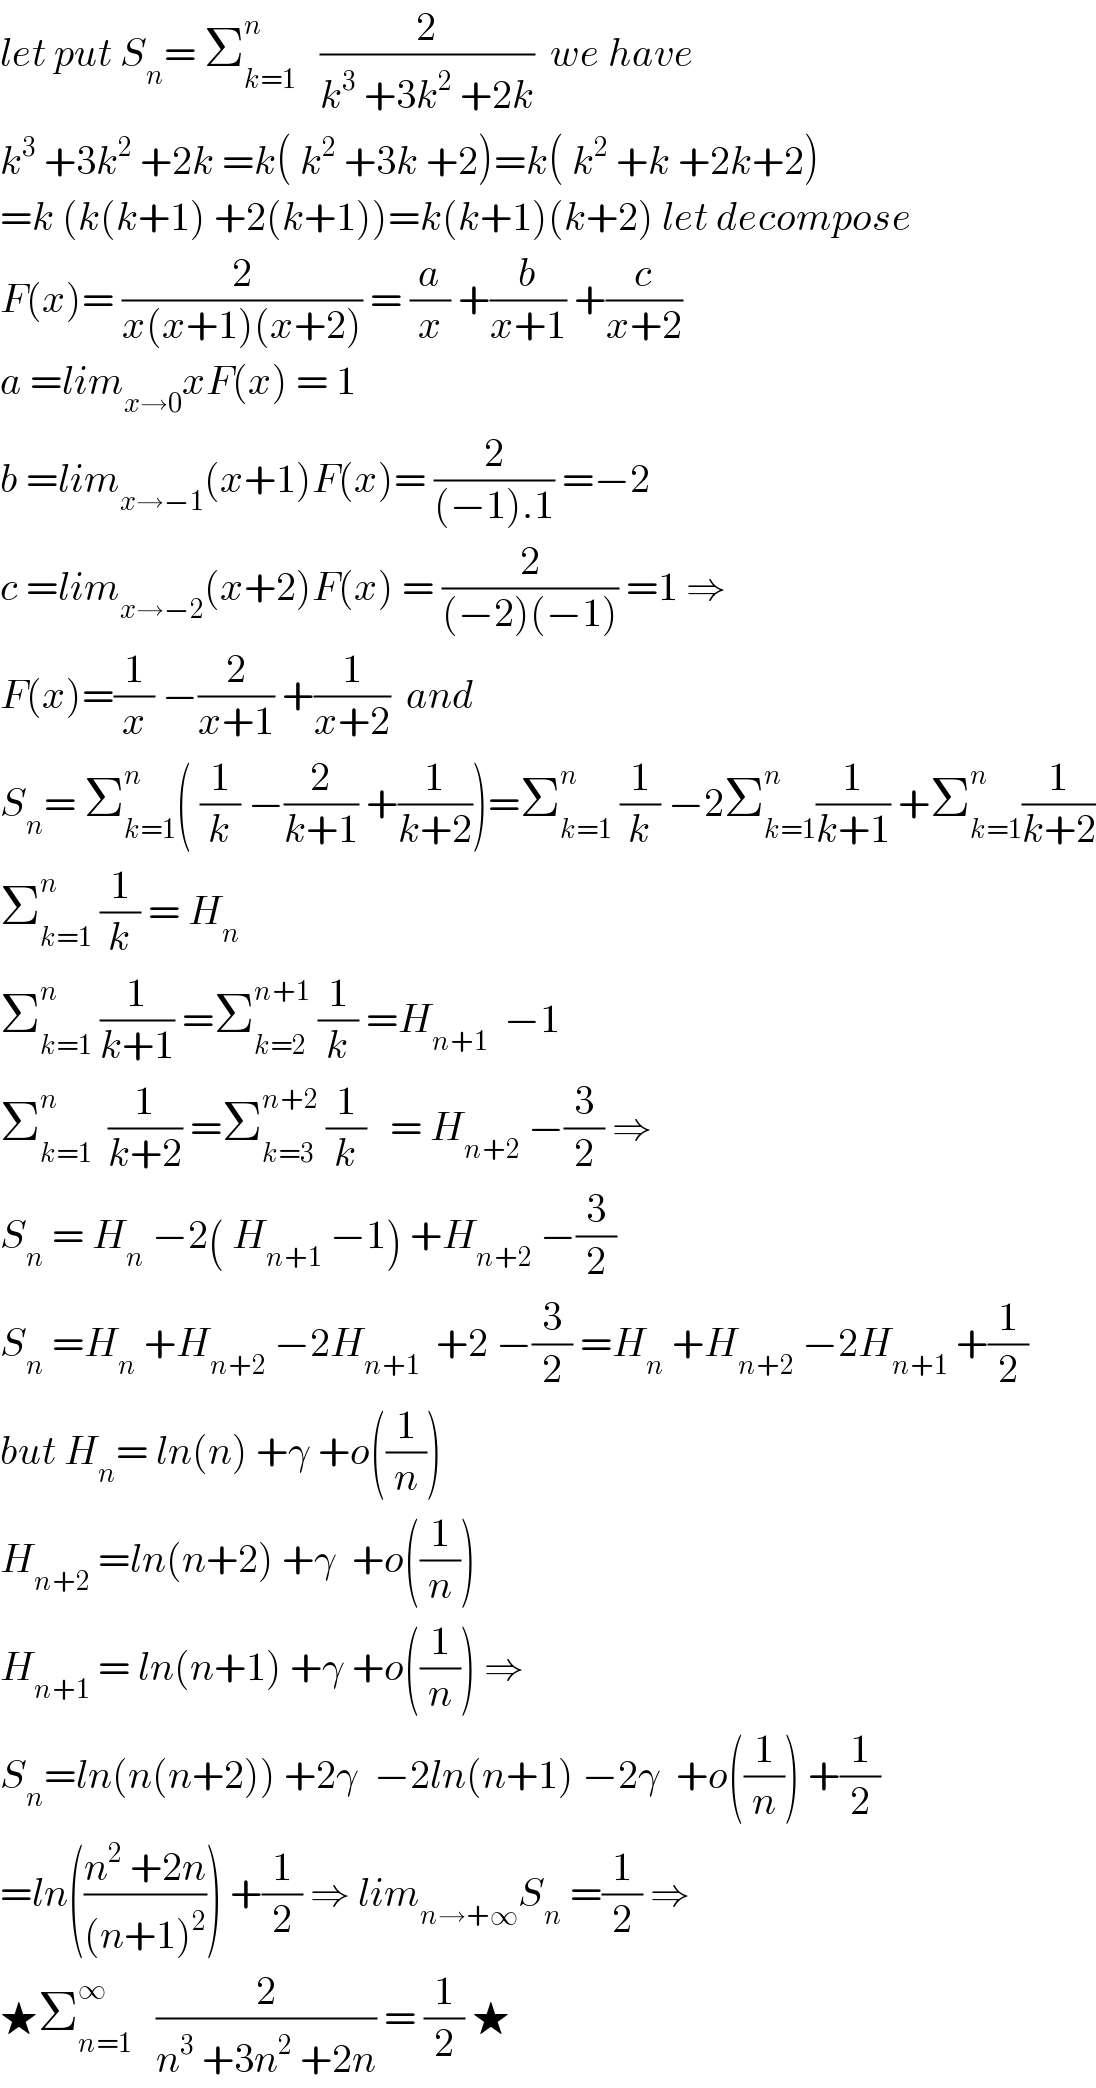 let put S_n = Σ_(k=1) ^n    (2/(k^3  +3k^2  +2k))  we have  k^3  +3k^2  +2k =k( k^2  +3k +2)=k( k^2  +k +2k+2)  =k (k(k+1) +2(k+1))=k(k+1)(k+2) let decompose  F(x)= (2/(x(x+1)(x+2))) = (a/x) +(b/(x+1)) +(c/(x+2))  a =lim_(x→0) xF(x) = 1  b =lim_(x→−1) (x+1)F(x)= (2/((−1).1)) =−2  c =lim_(x→−2) (x+2)F(x) = (2/((−2)(−1))) =1 ⇒  F(x)=(1/x) −(2/(x+1)) +(1/(x+2))  and  S_n = Σ_(k=1) ^n ( (1/k) −(2/(k+1)) +(1/(k+2)))=Σ_(k=1) ^n  (1/k) −2Σ_(k=1) ^n (1/(k+1)) +Σ_(k=1) ^n (1/(k+2))  Σ_(k=1) ^n  (1/k) = H_n   Σ_(k=1) ^n  (1/(k+1)) =Σ_(k=2) ^(n+1)  (1/k) =H_(n+1)   −1  Σ_(k=1) ^n   (1/(k+2)) =Σ_(k=3) ^(n+2)  (1/k)   = H_(n+2)  −(3/2) ⇒  S_n  = H_n  −2( H_(n+1)  −1) +H_(n+2)  −(3/2)  S_n  =H_n  +H_(n+2)  −2H_(n+1)   +2 −(3/2) =H_n  +H_(n+2)  −2H_(n+1)  +(1/2)  but H_n = ln(n) +γ +o((1/n))  H_(n+2)  =ln(n+2) +γ  +o((1/n))  H_(n+1)  = ln(n+1) +γ +o((1/n)) ⇒  S_n =ln(n(n+2)) +2γ  −2ln(n+1) −2γ  +o((1/n)) +(1/2)  =ln(((n^2  +2n)/((n+1)^2 ))) +(1/2) ⇒ lim_(n→+∞) S_n  =(1/2) ⇒  ★Σ_(n=1) ^∞    (2/(n^3  +3n^2  +2n)) = (1/2) ★  